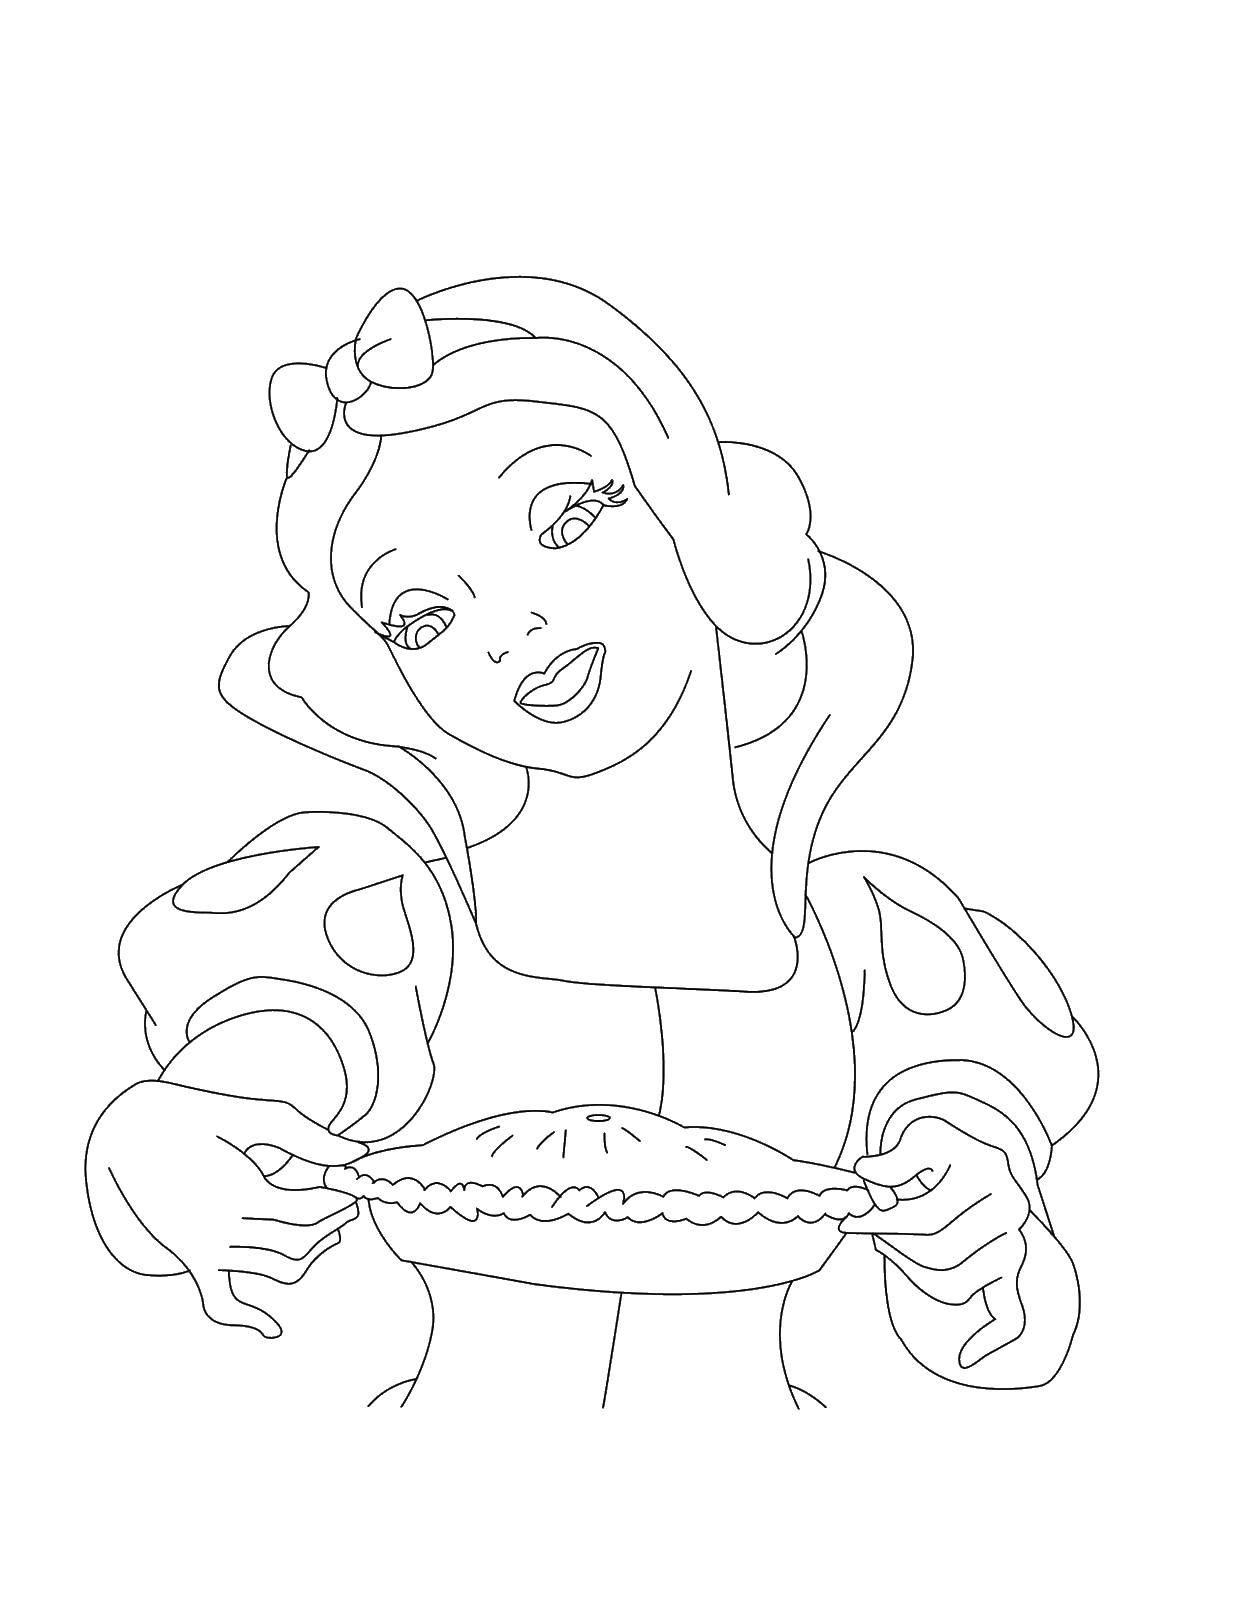 Название: Раскраска Диснеевская принцесса испекла пирок. Категория: Диснеевские мультфильмы. Теги: принцесса, пирог.